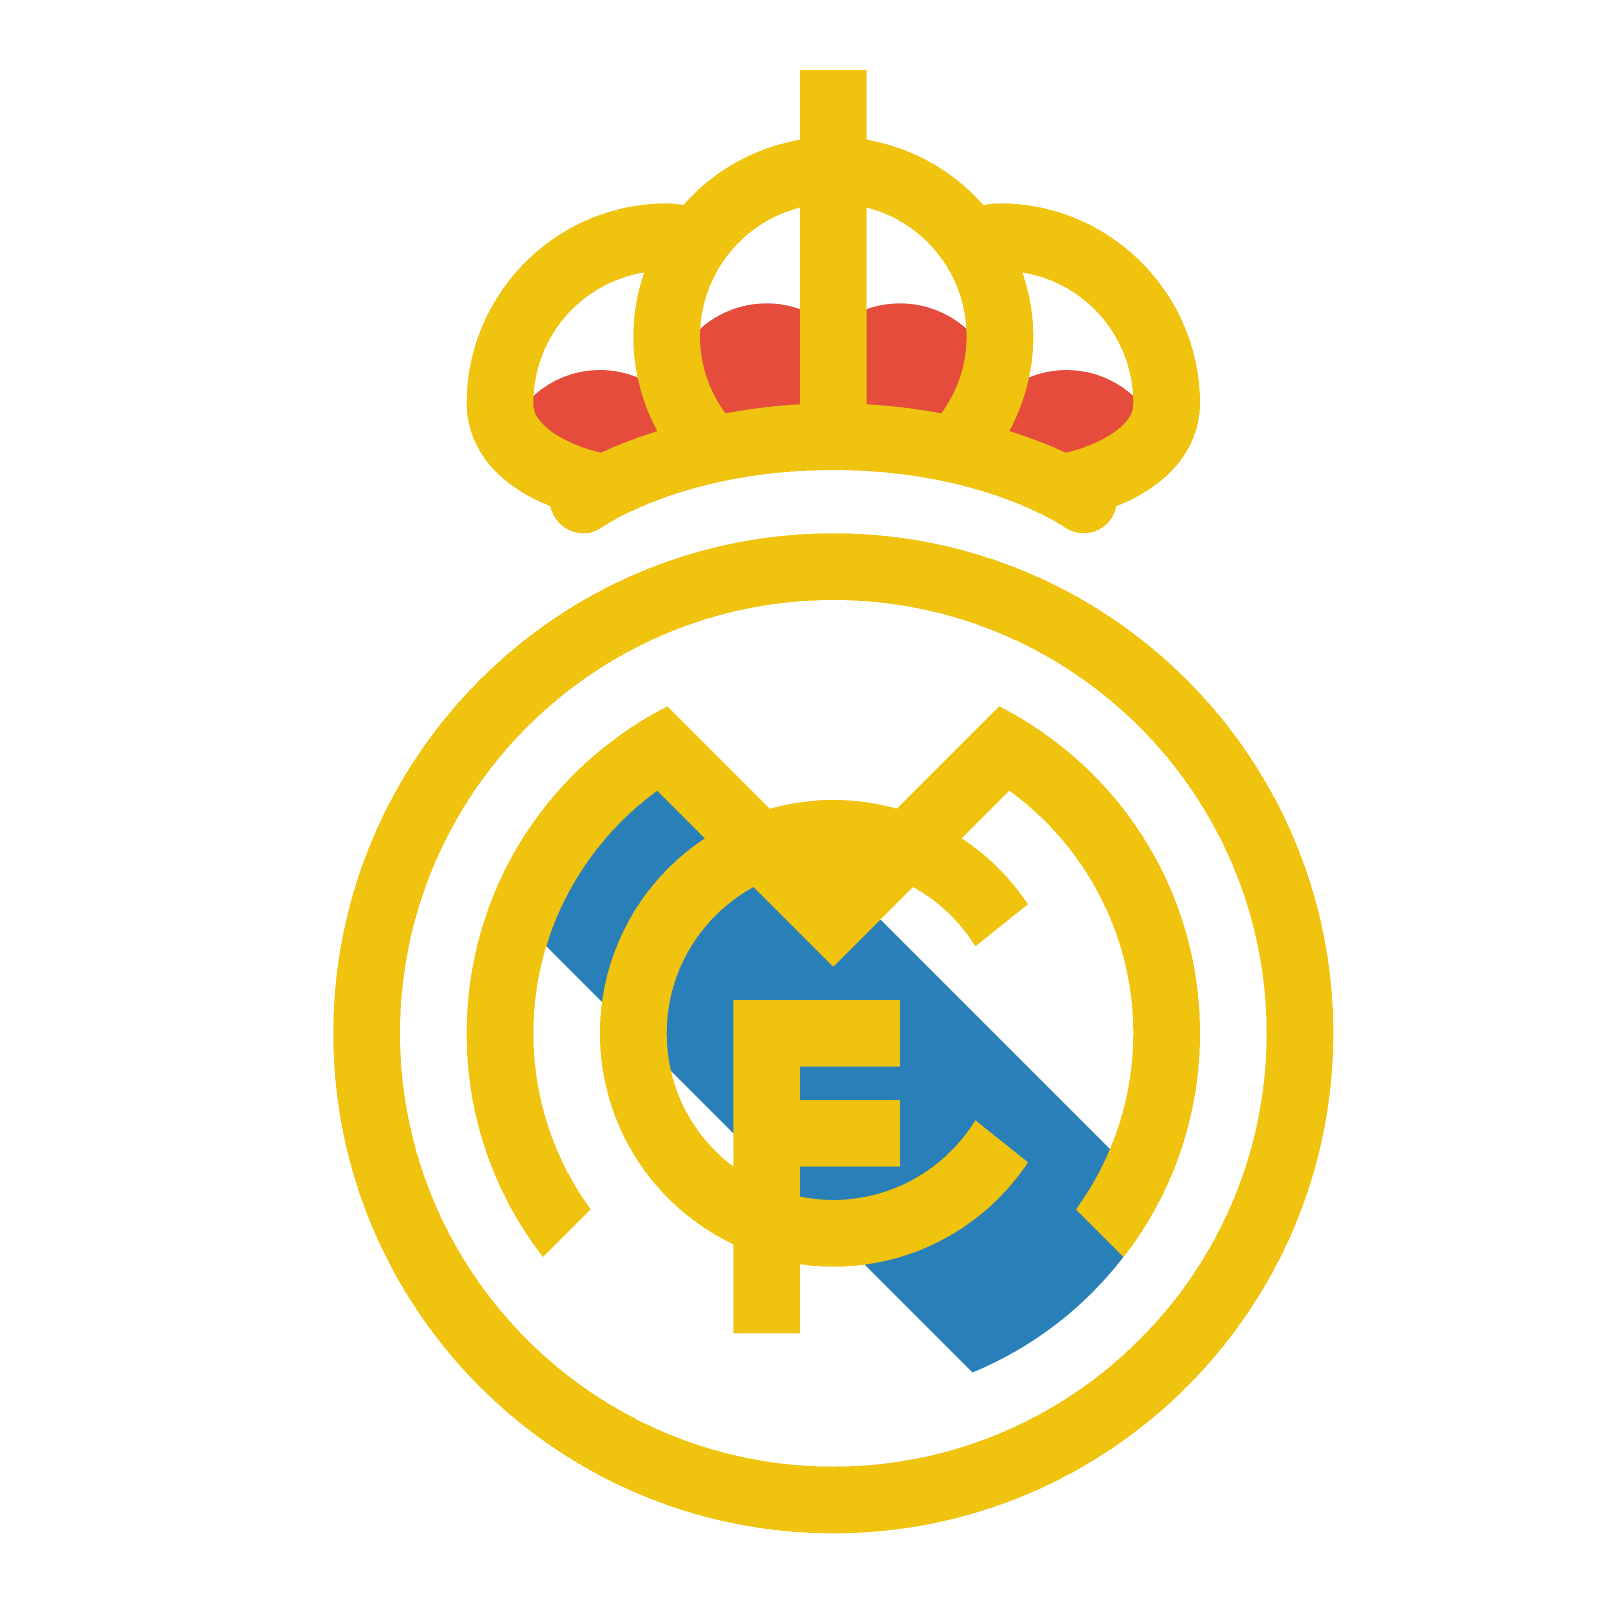 Футбольный клуб Реал Мадрид лого. Реал Мадрид герб футбольного клуба. Футбольный клуб Реал Мадрид PNG. Реал Мадрид логотип на прозрачном фоне. Лого мадрида